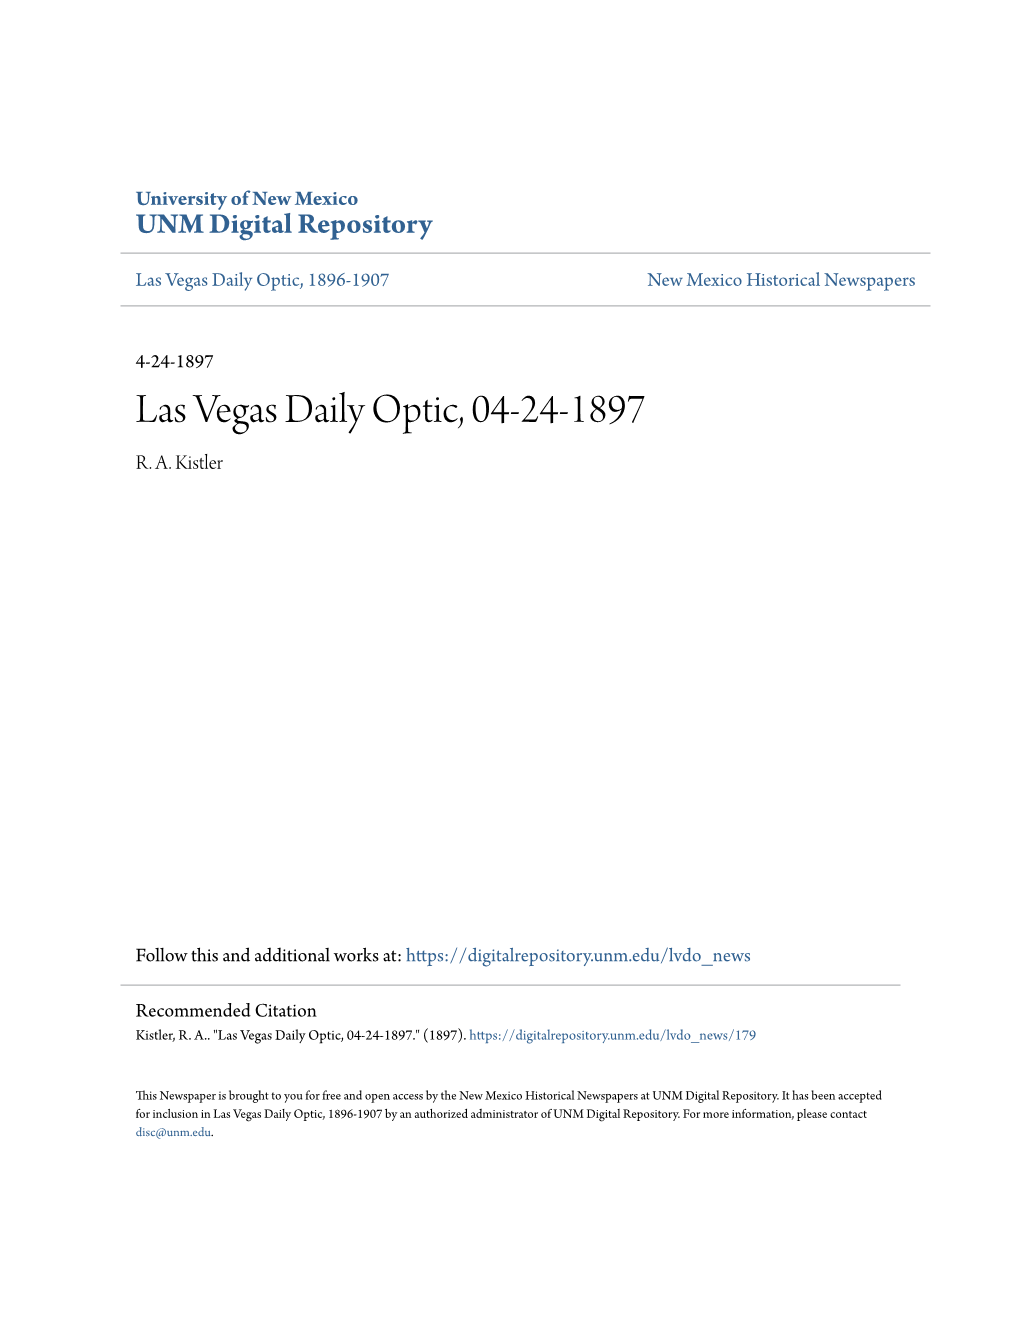 Las Vegas Daily Optic, 04-24-1897 R